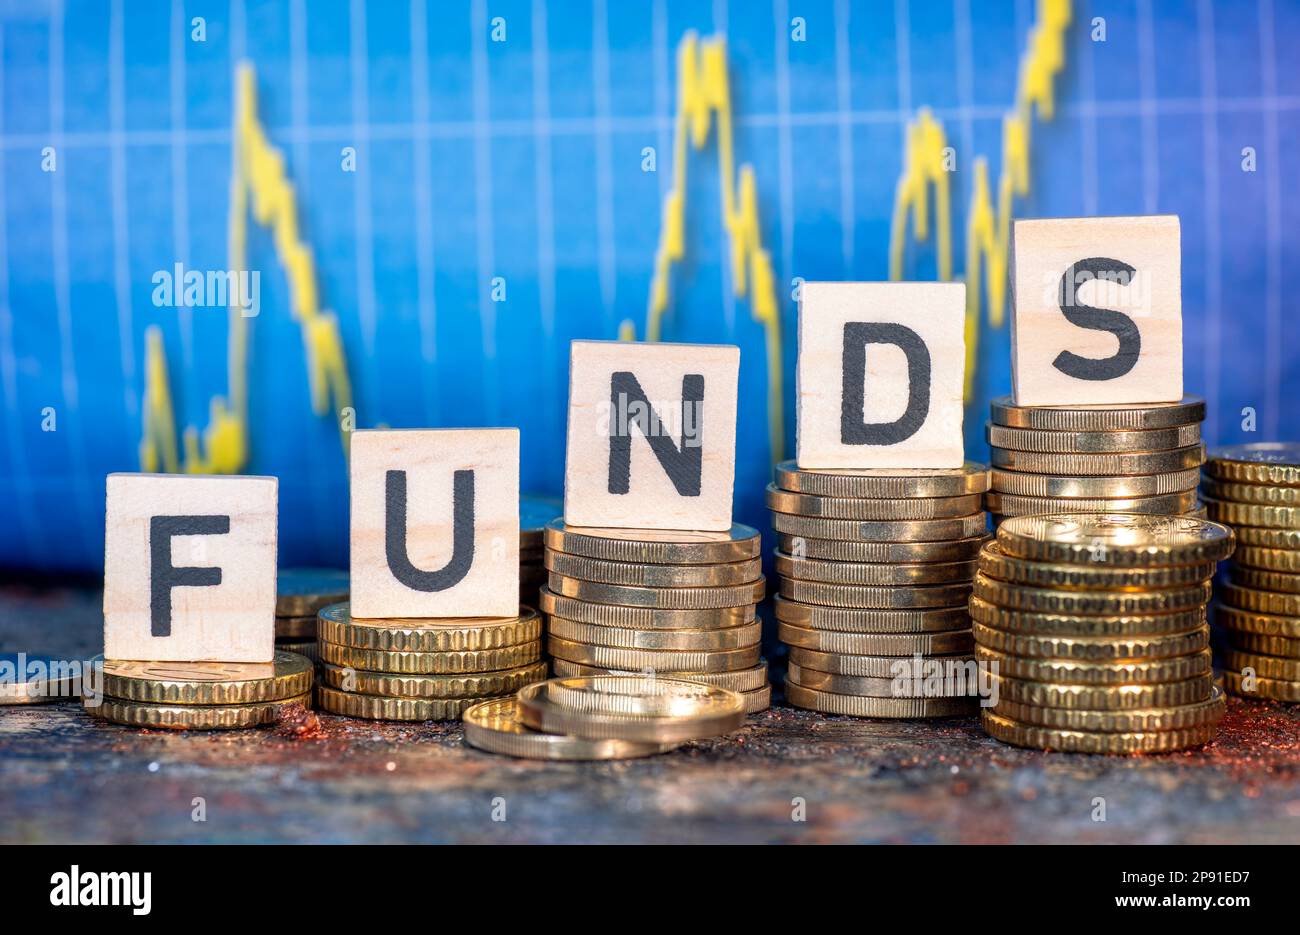 Mehrere Münzstapel und der Begriff "Fonds" und eine Tabelle mit Aktienkursen. Stockfoto